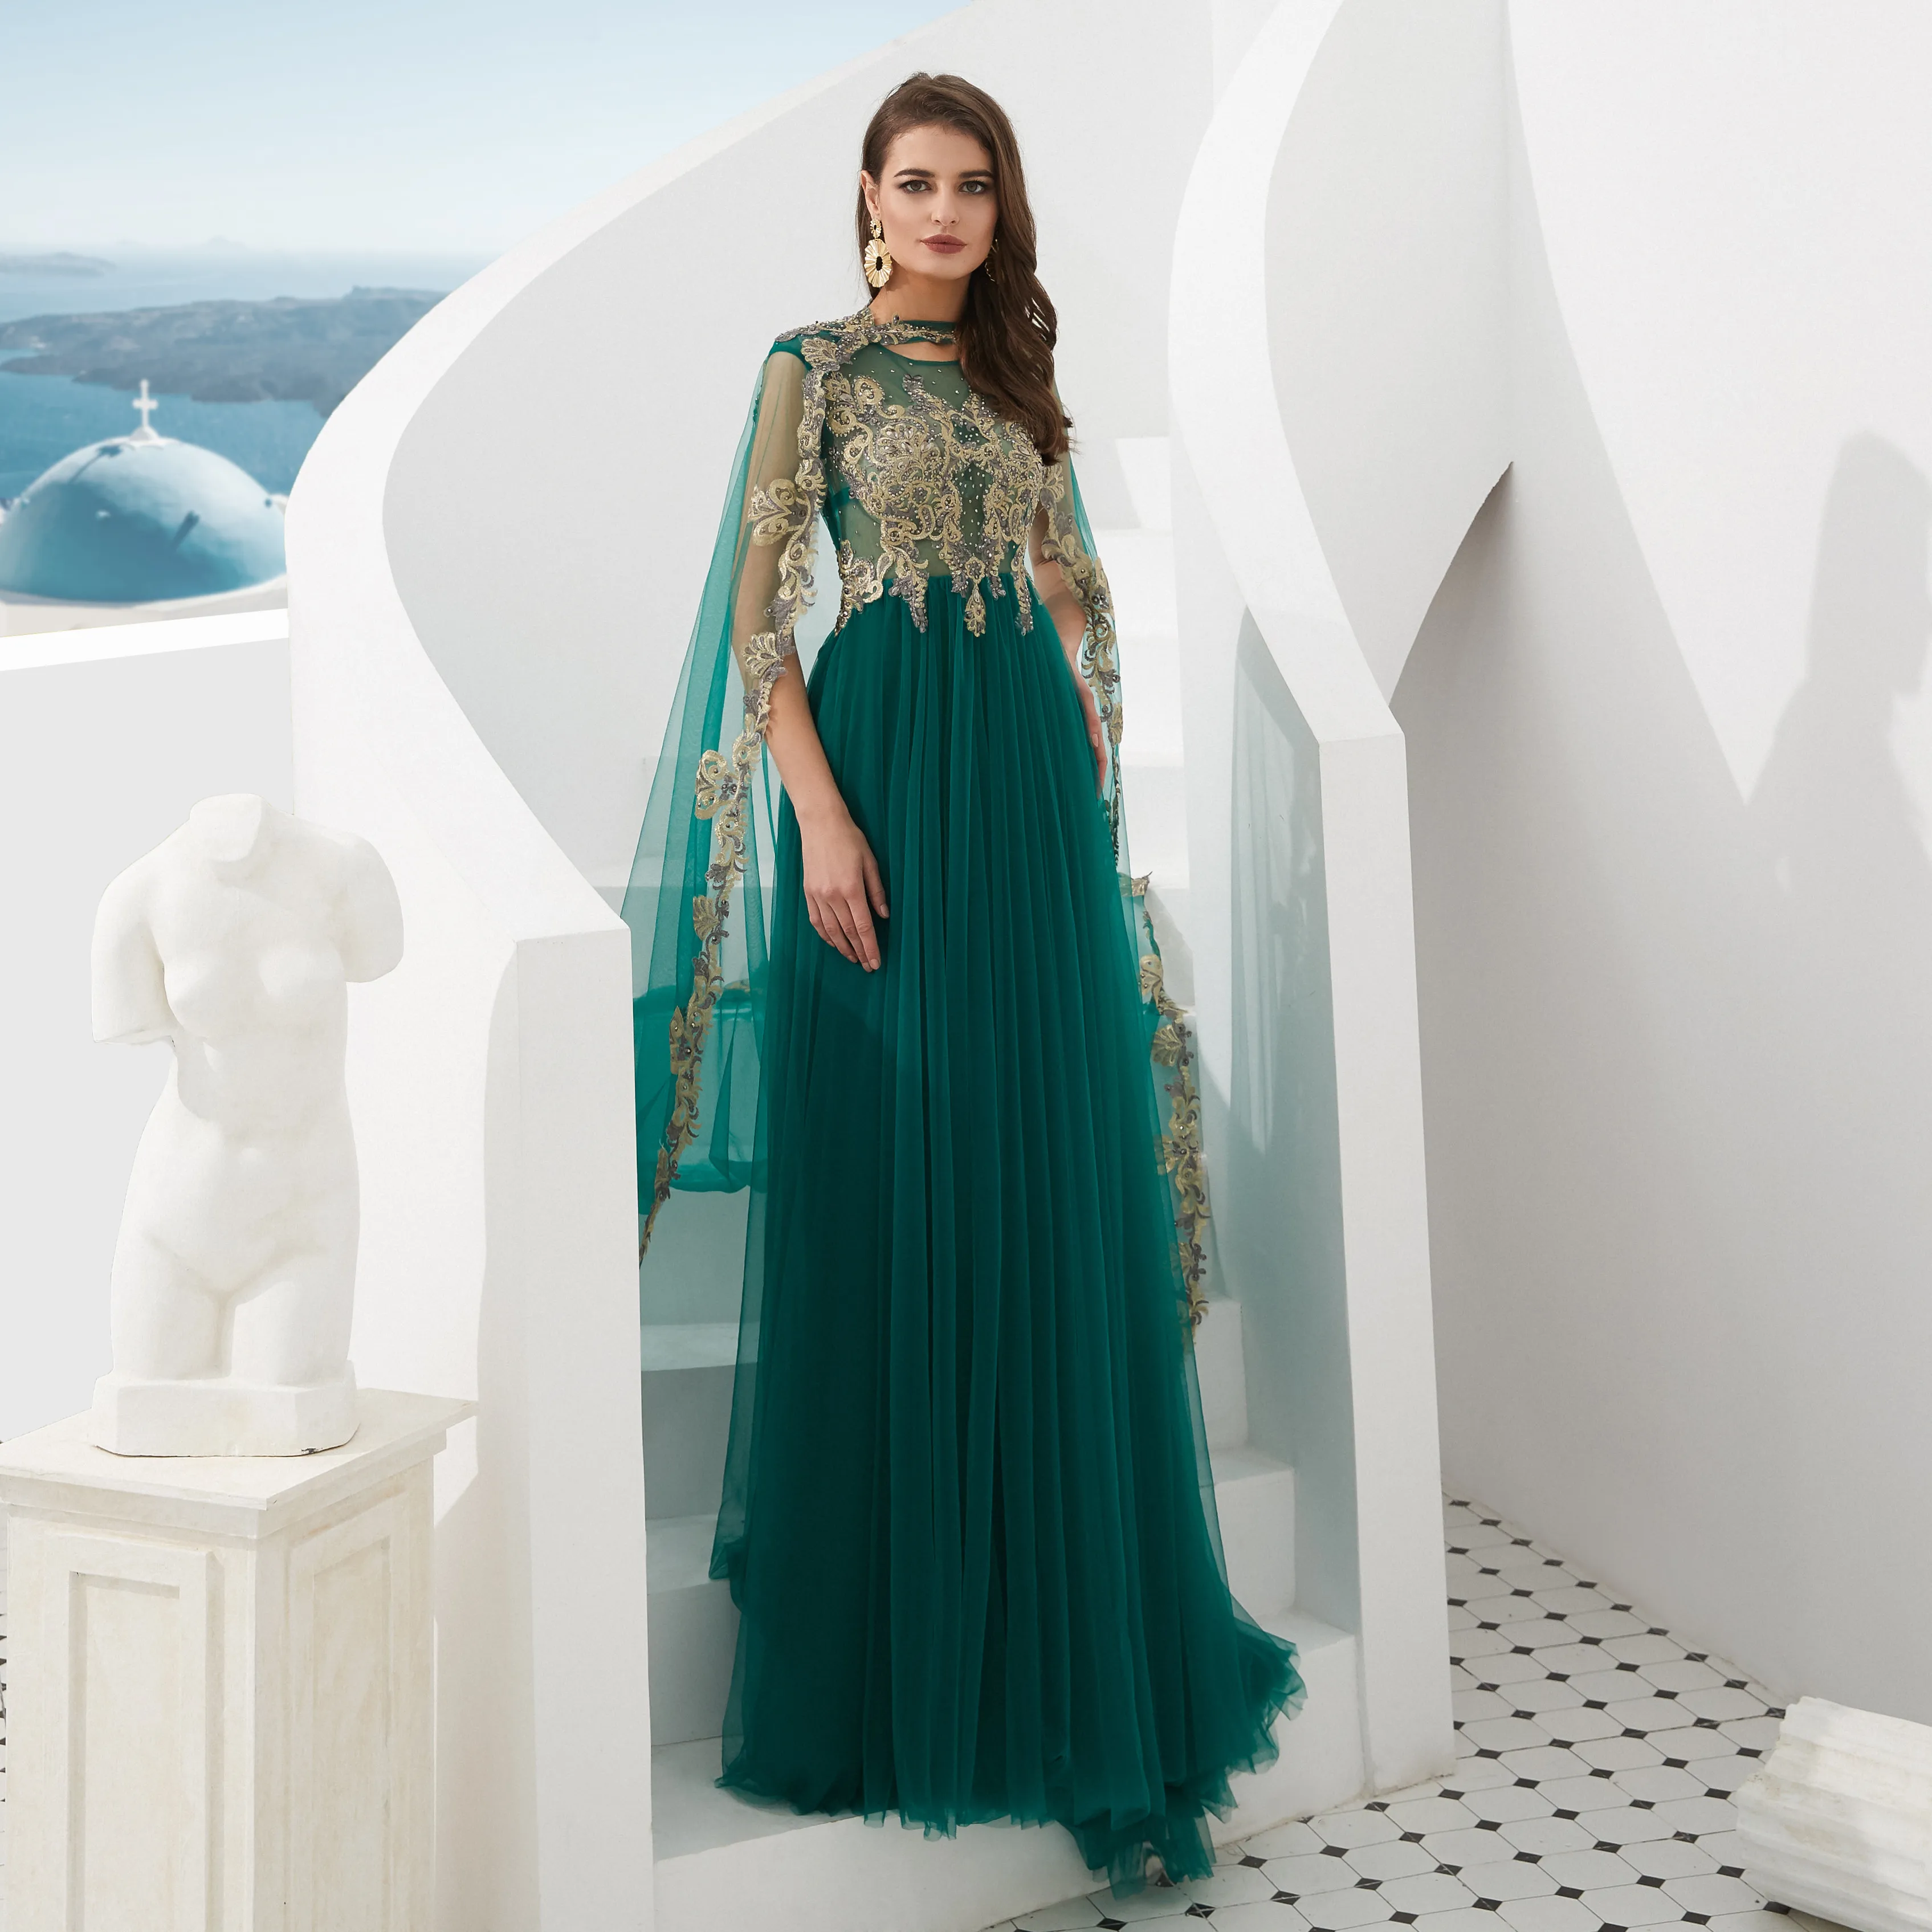 Günstig 2019 grün EINE Linie Prom Kleid mit Gold Spitze Applique Kaftan Mode Robe de Soiree Dubai Abendkleid Perlen Muslimischen abaya Gece